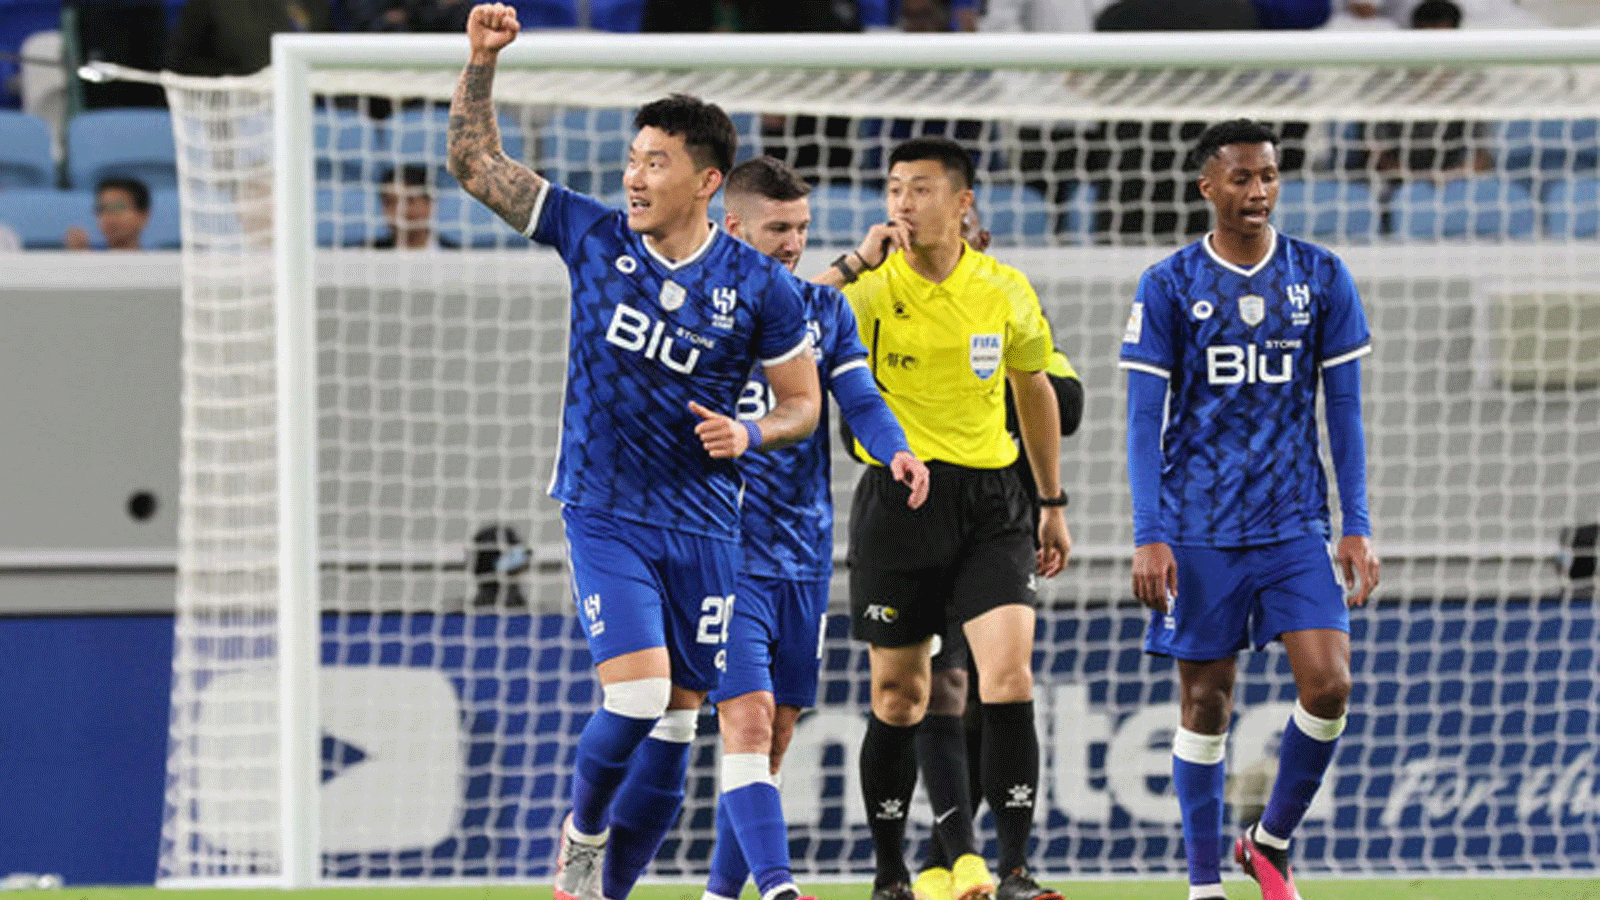 مدافع الهلال الكوري الجنوبي جانغ هيون سو (يسار) يحتفل بتسجيل الهدف الثاني لفريقه خلال مباراة دور الـ16 من دوري أبطال آسيا ضد شباب الأهلي الإماراتي